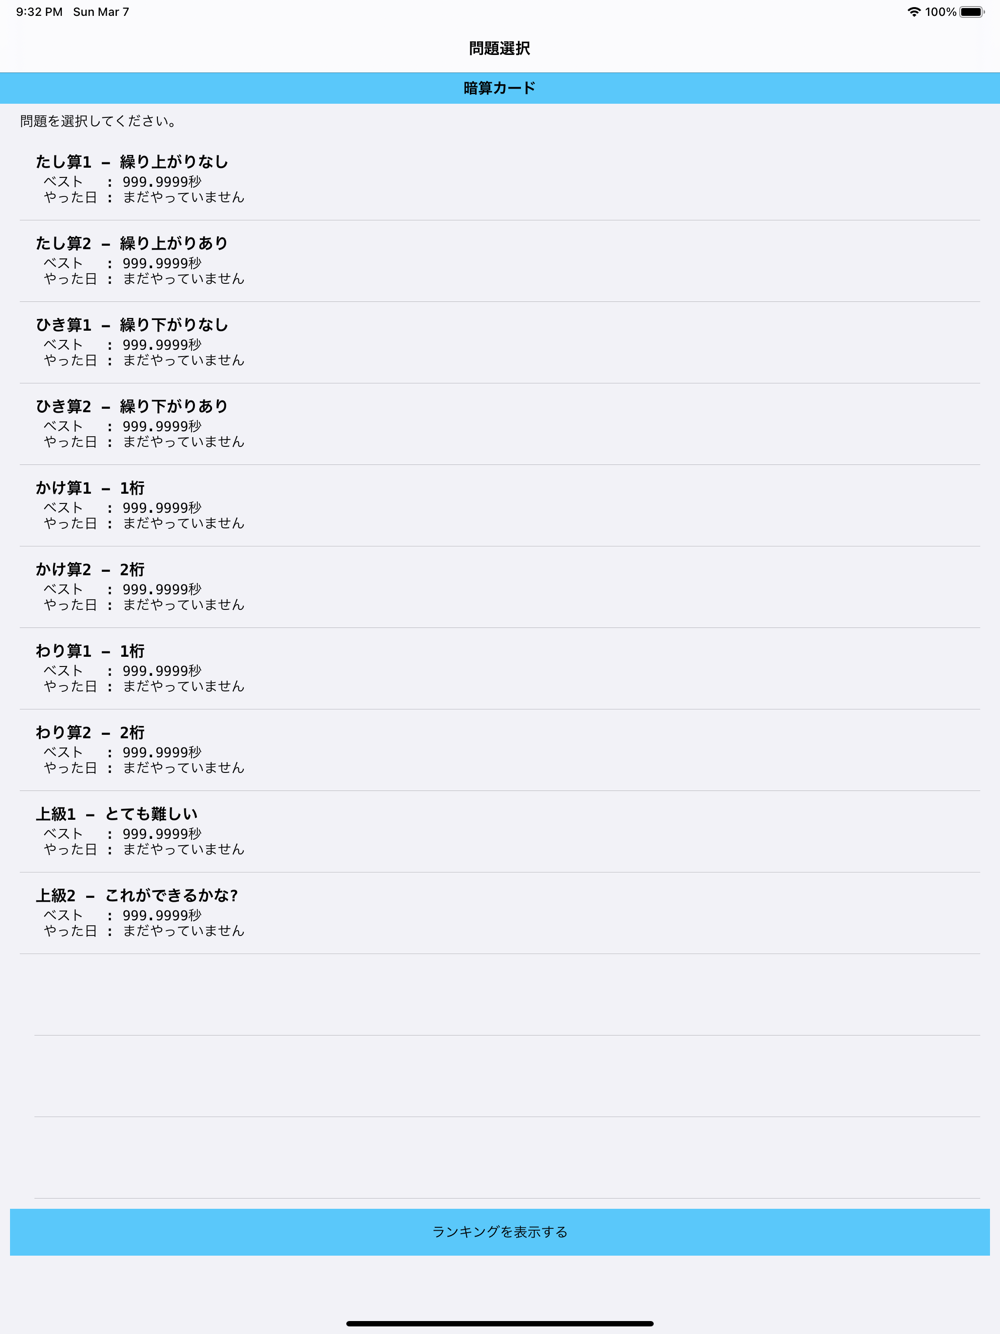 暗算カード Free Download App For Iphone Steprimo Com